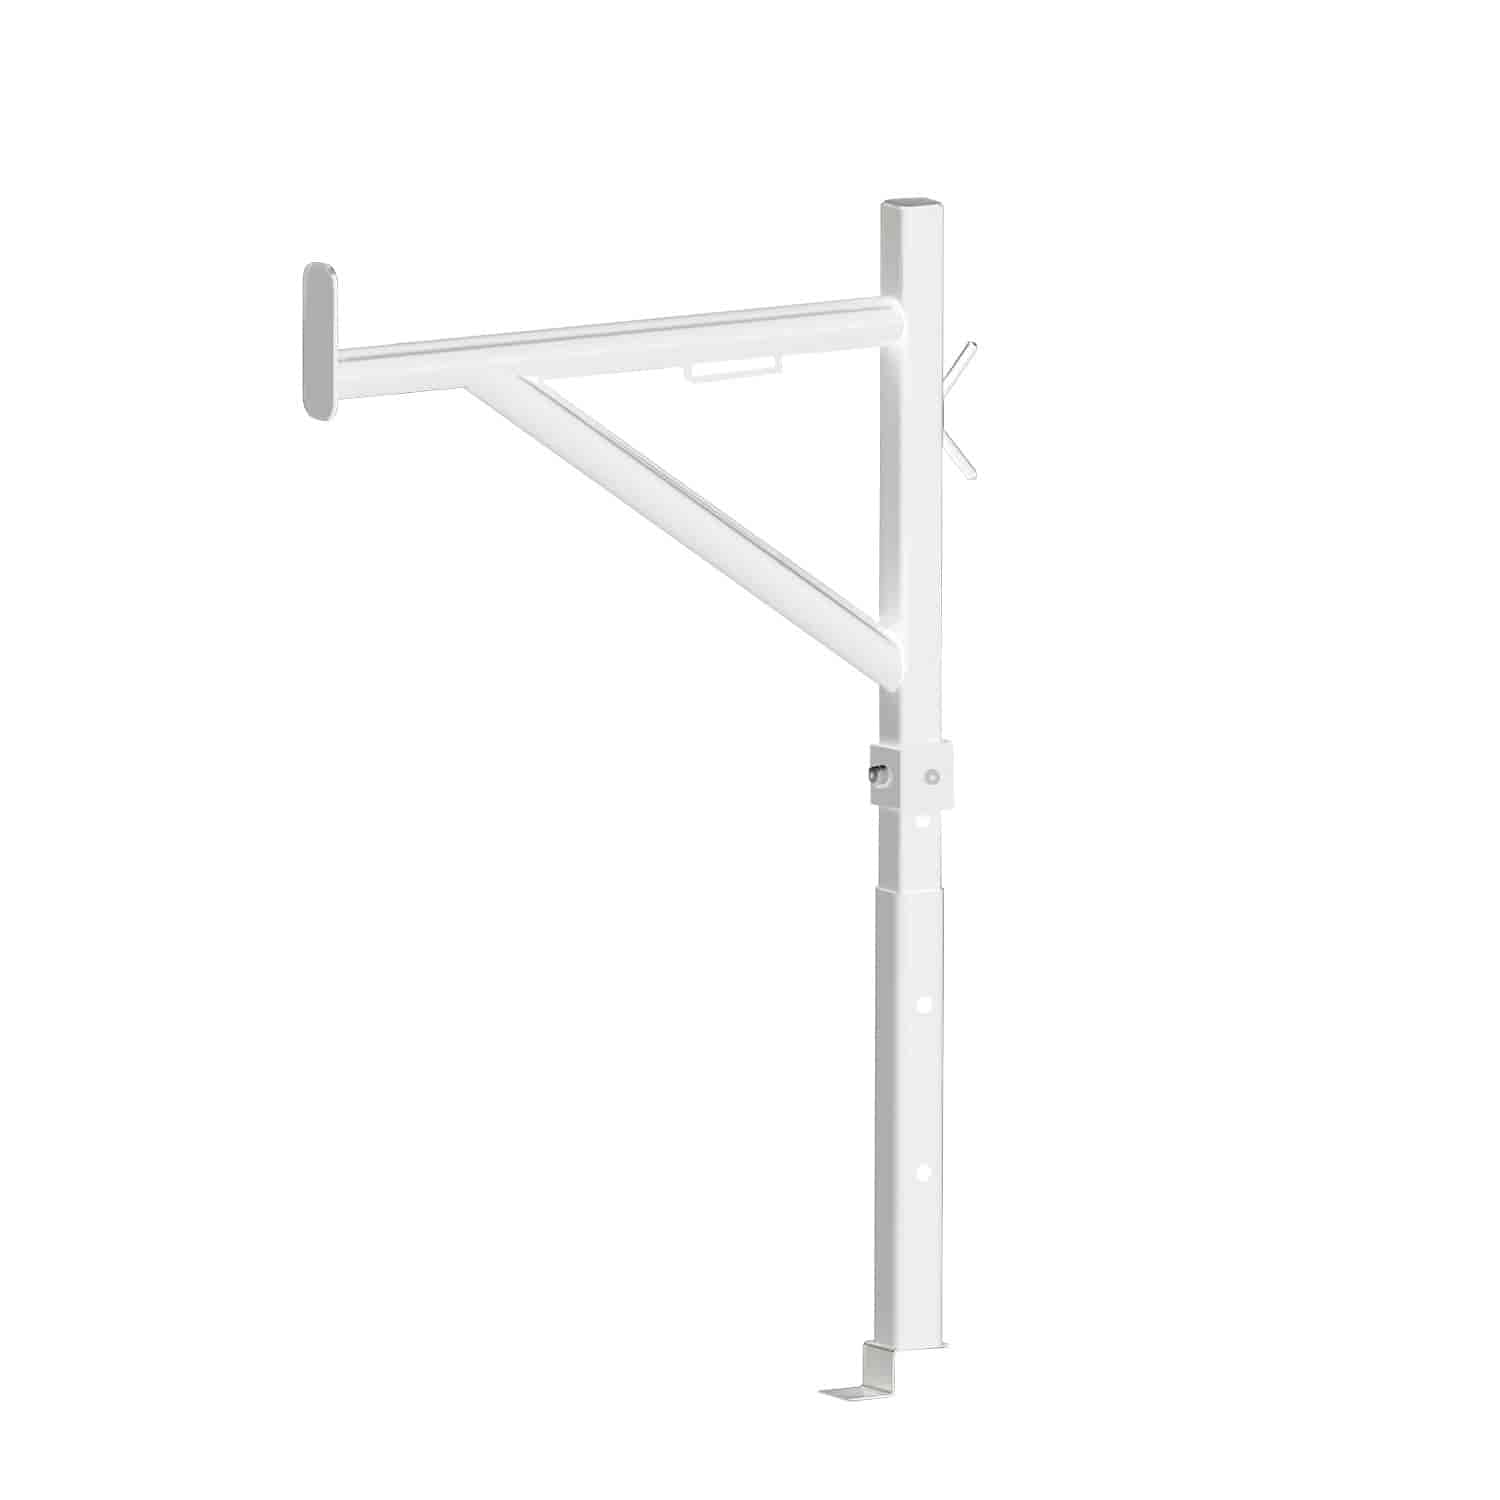 HDX Ladder Rack White Steel